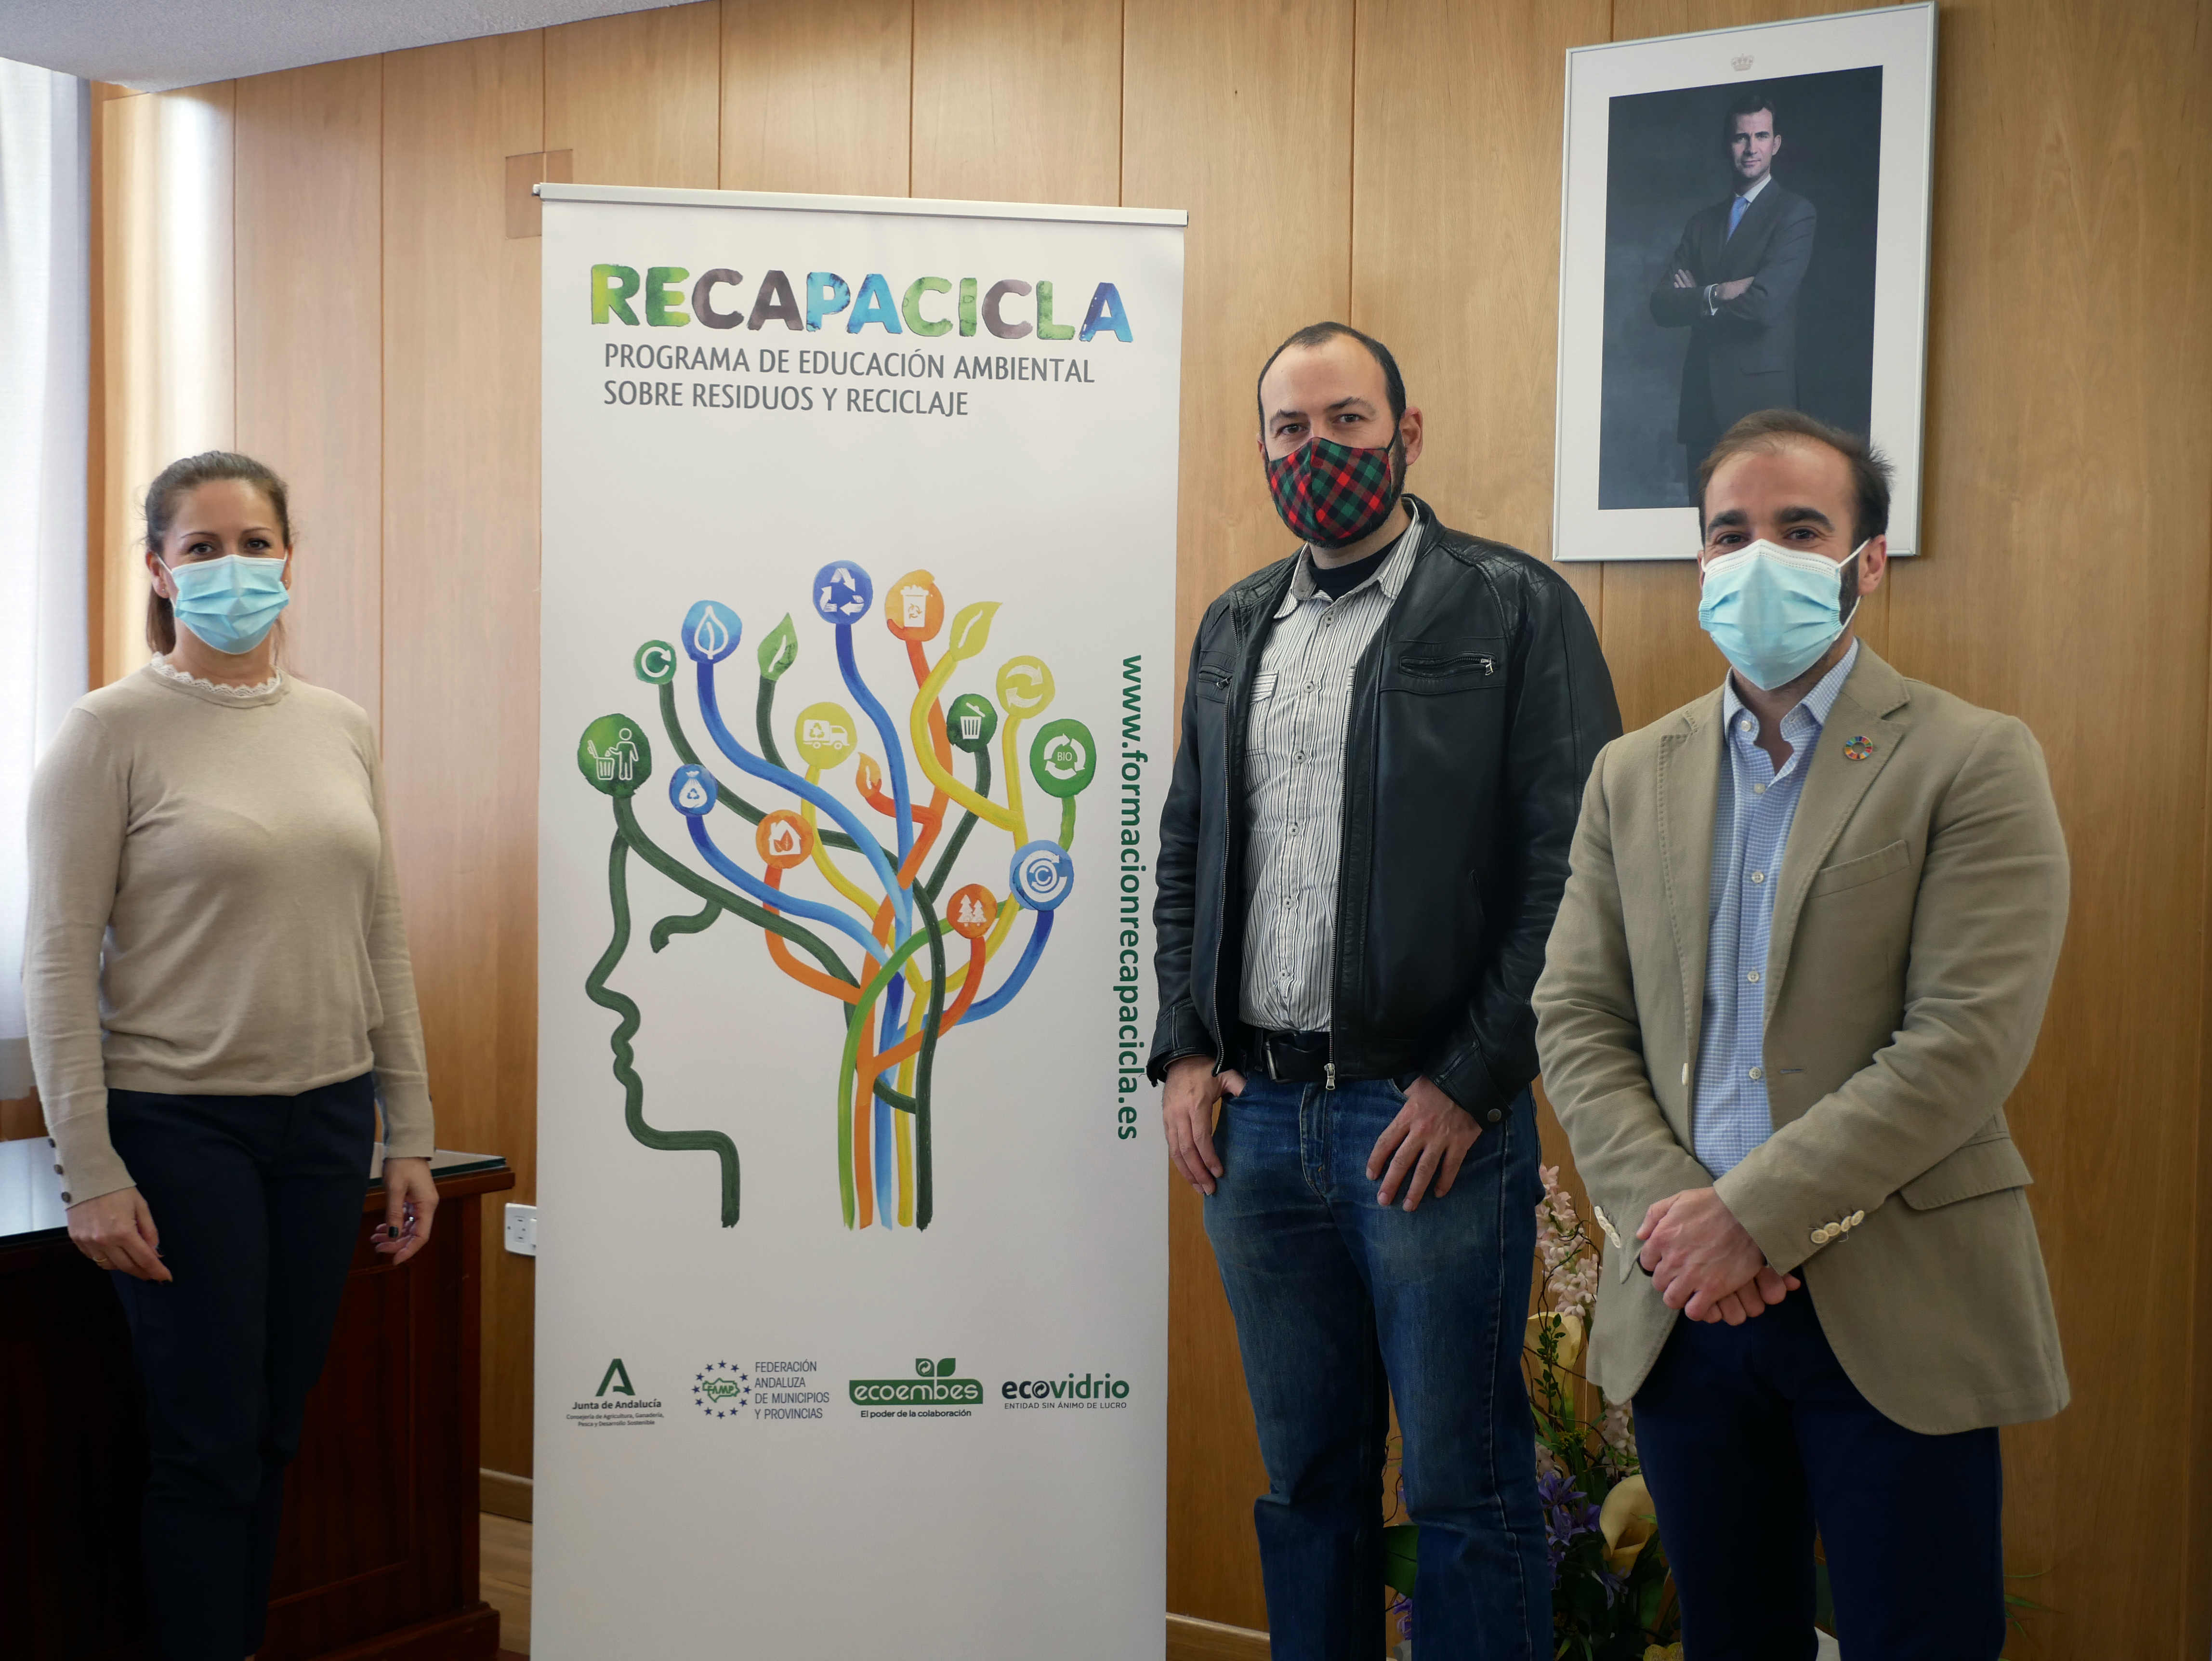 María Belén Feriche, Directora del Secretariado Campus Saludable de la UGR; Álvaro Ruiz Hidalgo, coordinador del Programa RECAPACICLA; y Víctor Vázquez, técnico de Ecoembes, una de las entidades que organizan el Programa RECAPACICLA.